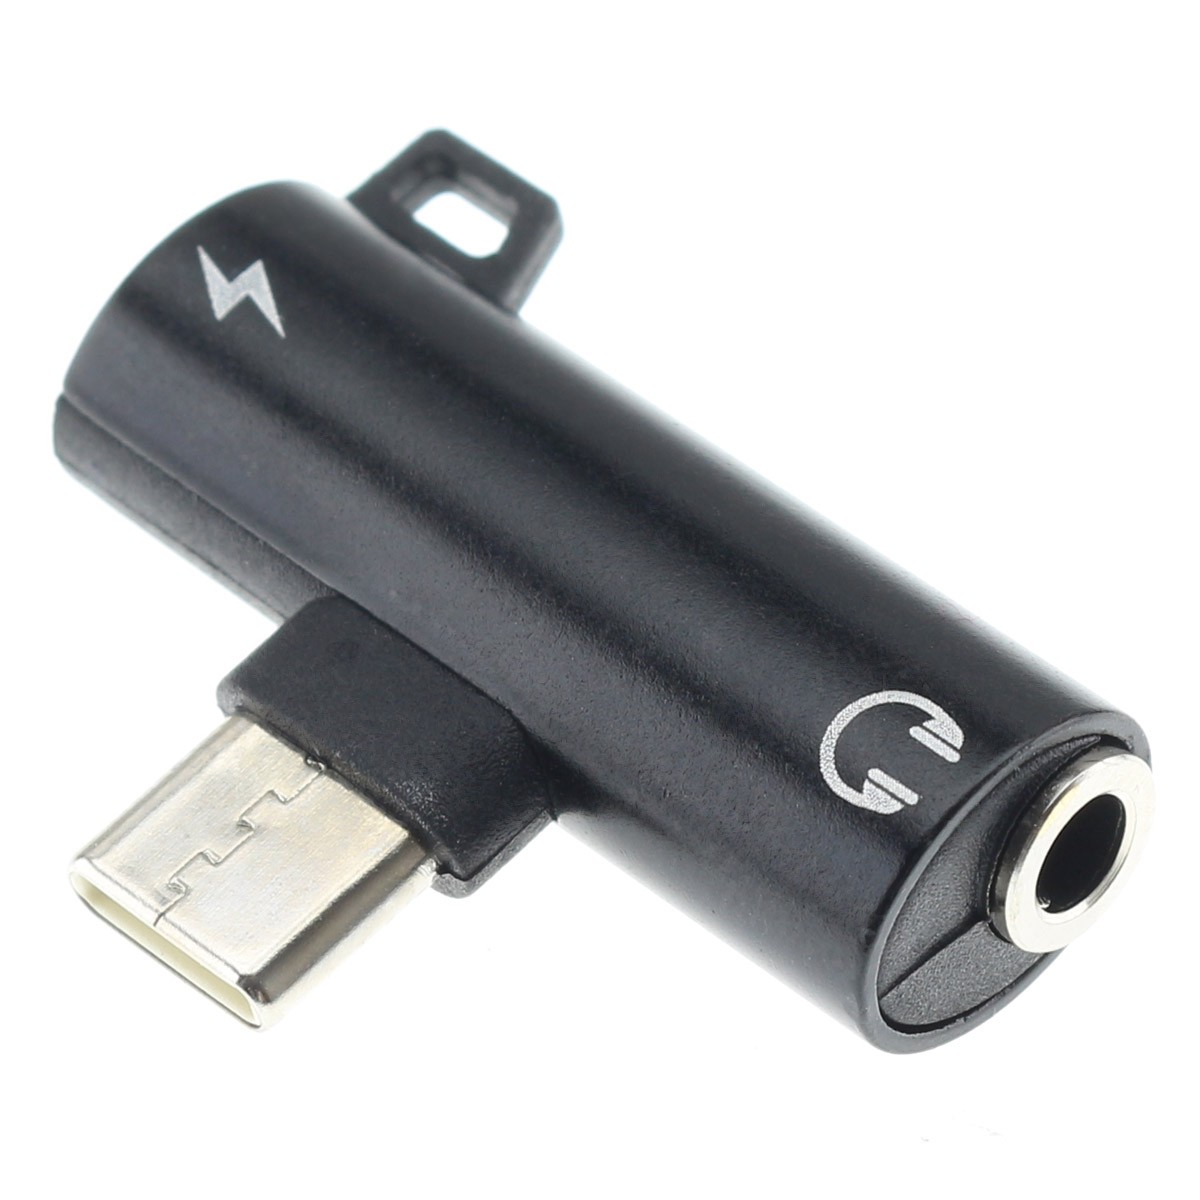 Adaptateur de câble audio AUX USB-C vers jack 3.5 mm